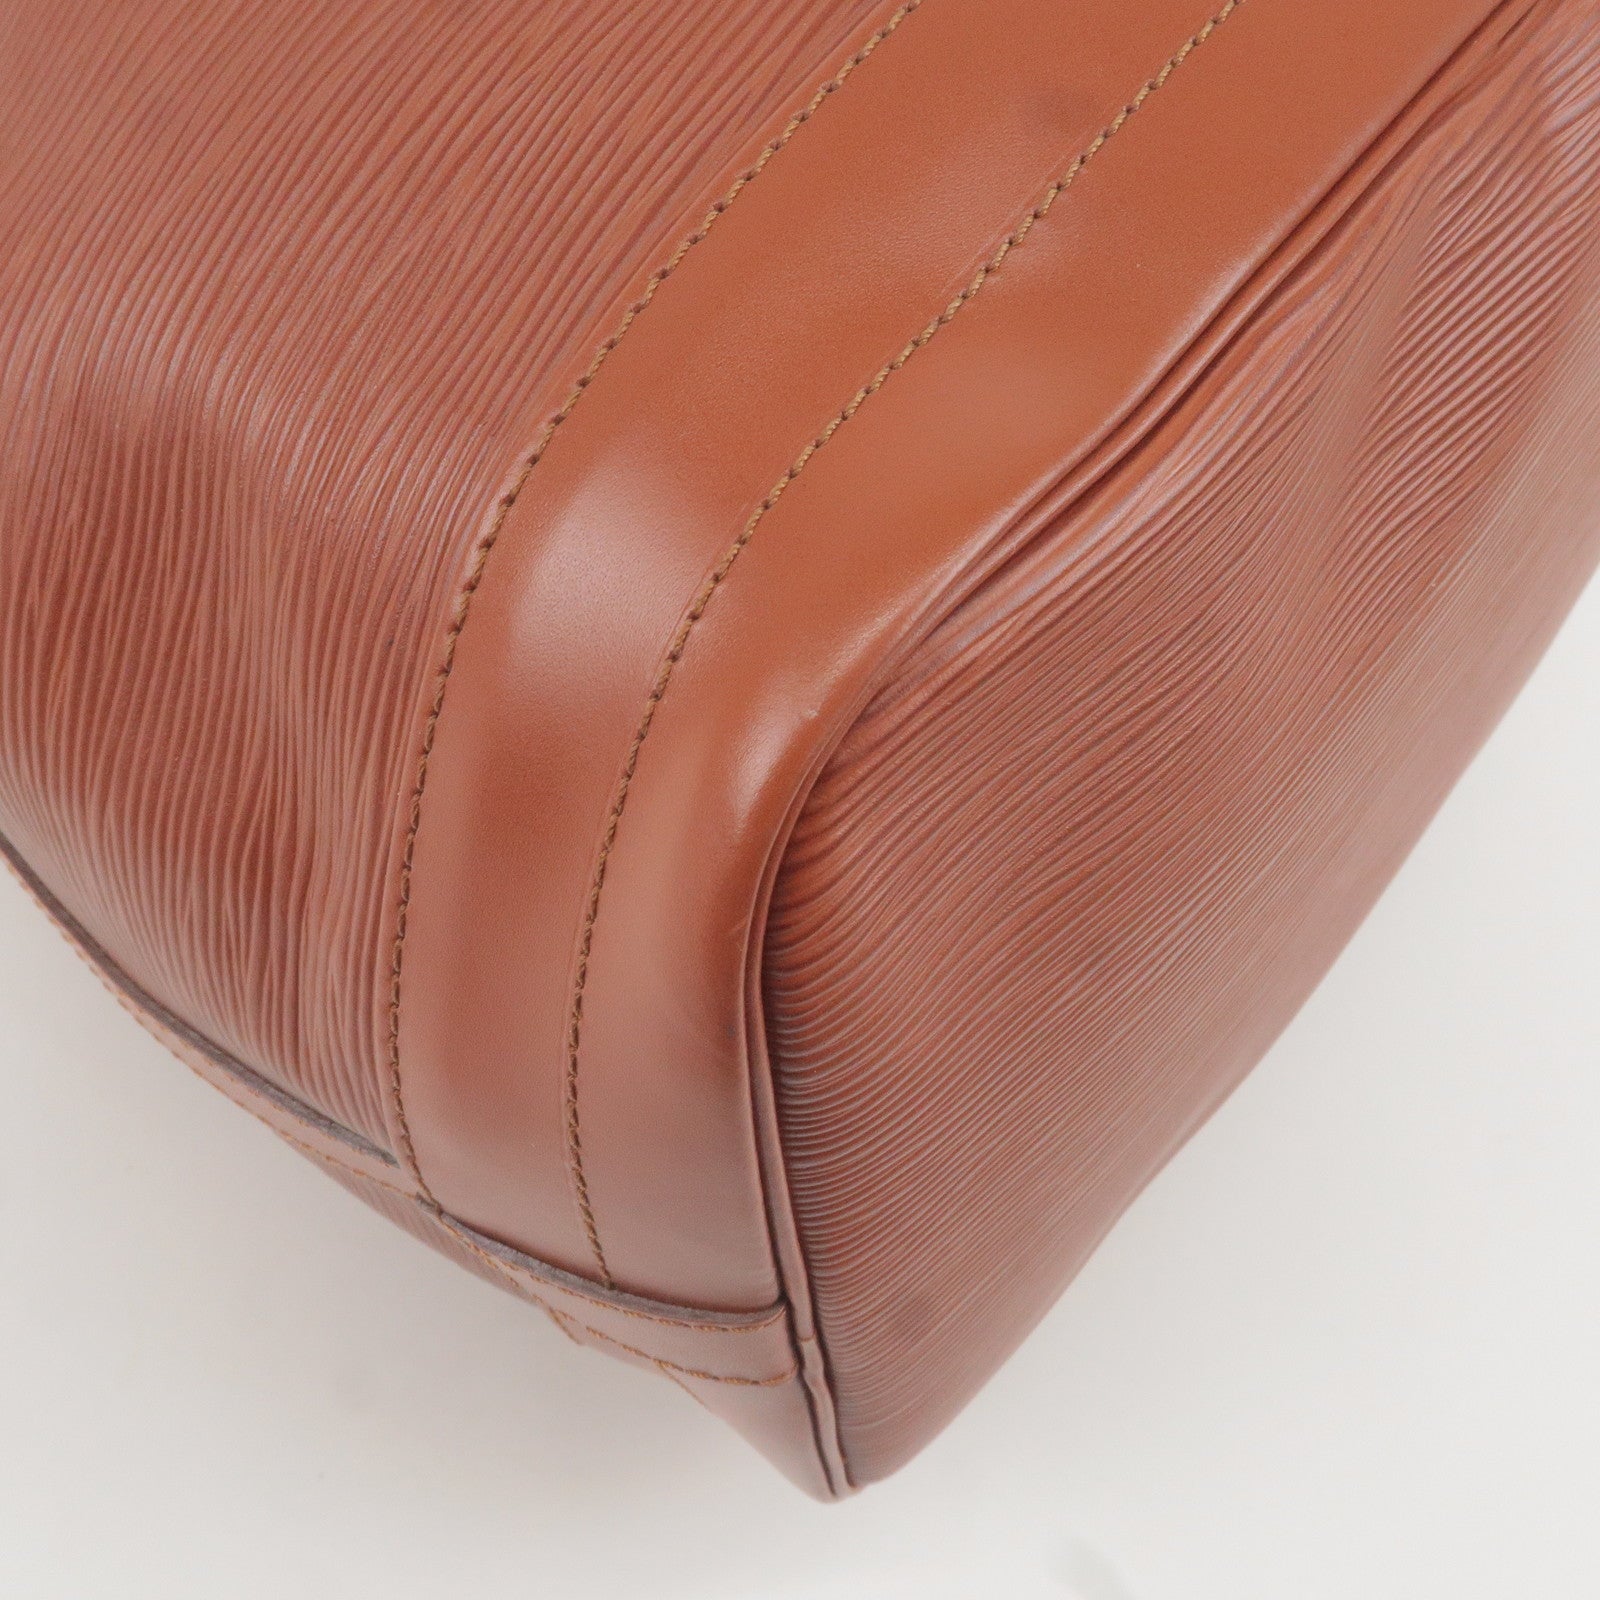 Nile cloth handbag Louis Vuitton Brown in Cloth - 37227707